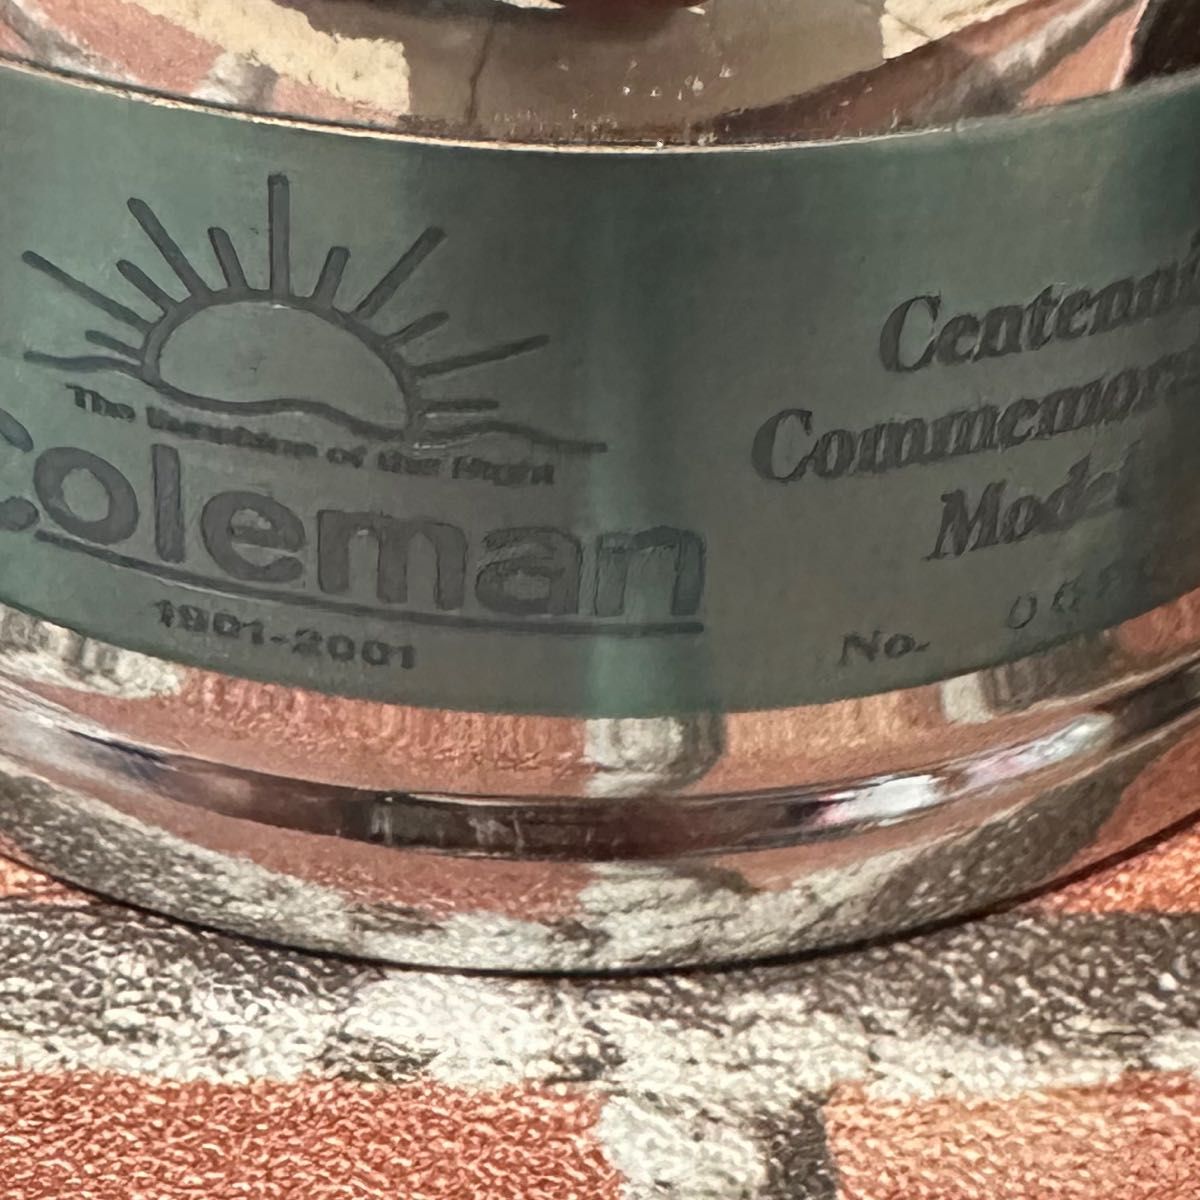 コールマン　100周年記念　センテニアルランタン　coleman